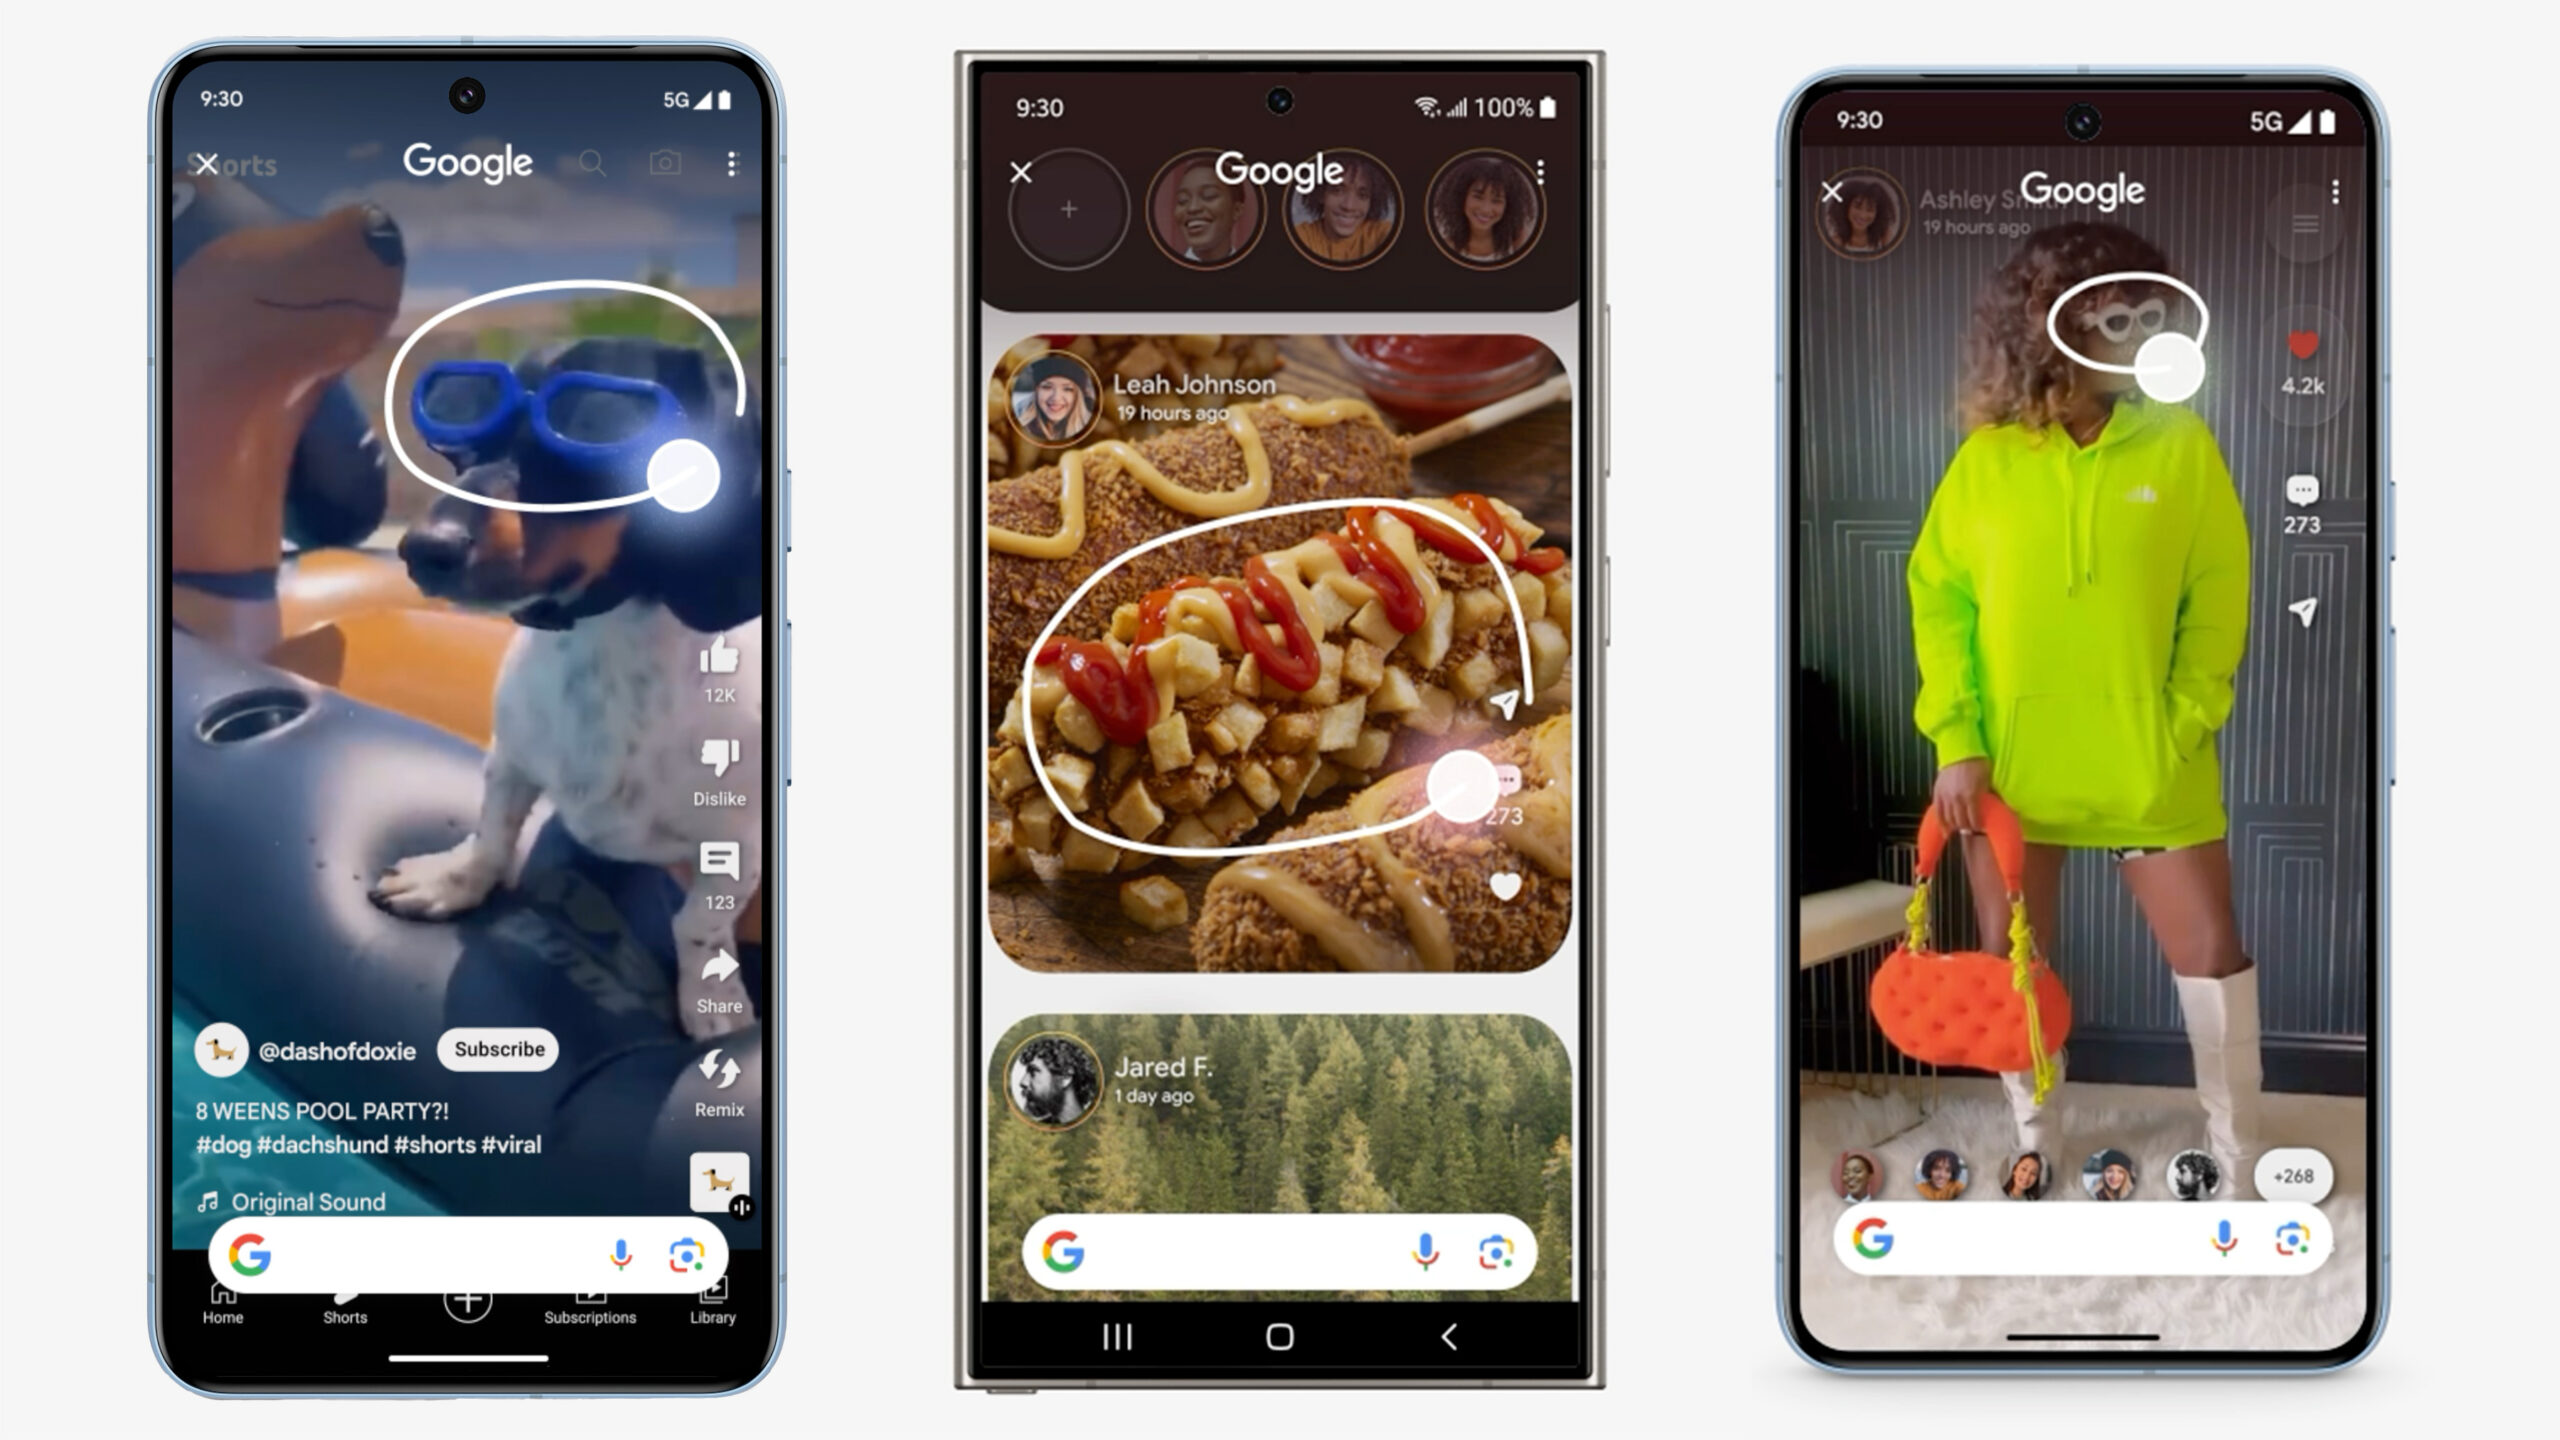 Trzy smartfony wyświetlają różne treści zakreślane kółkiem Google Circle Search. Pies w okularach pływackich, porcja frytek z sosem i ketchupem, oraz osoba w neono zielonym ubraniu z pomarańczową torebką.